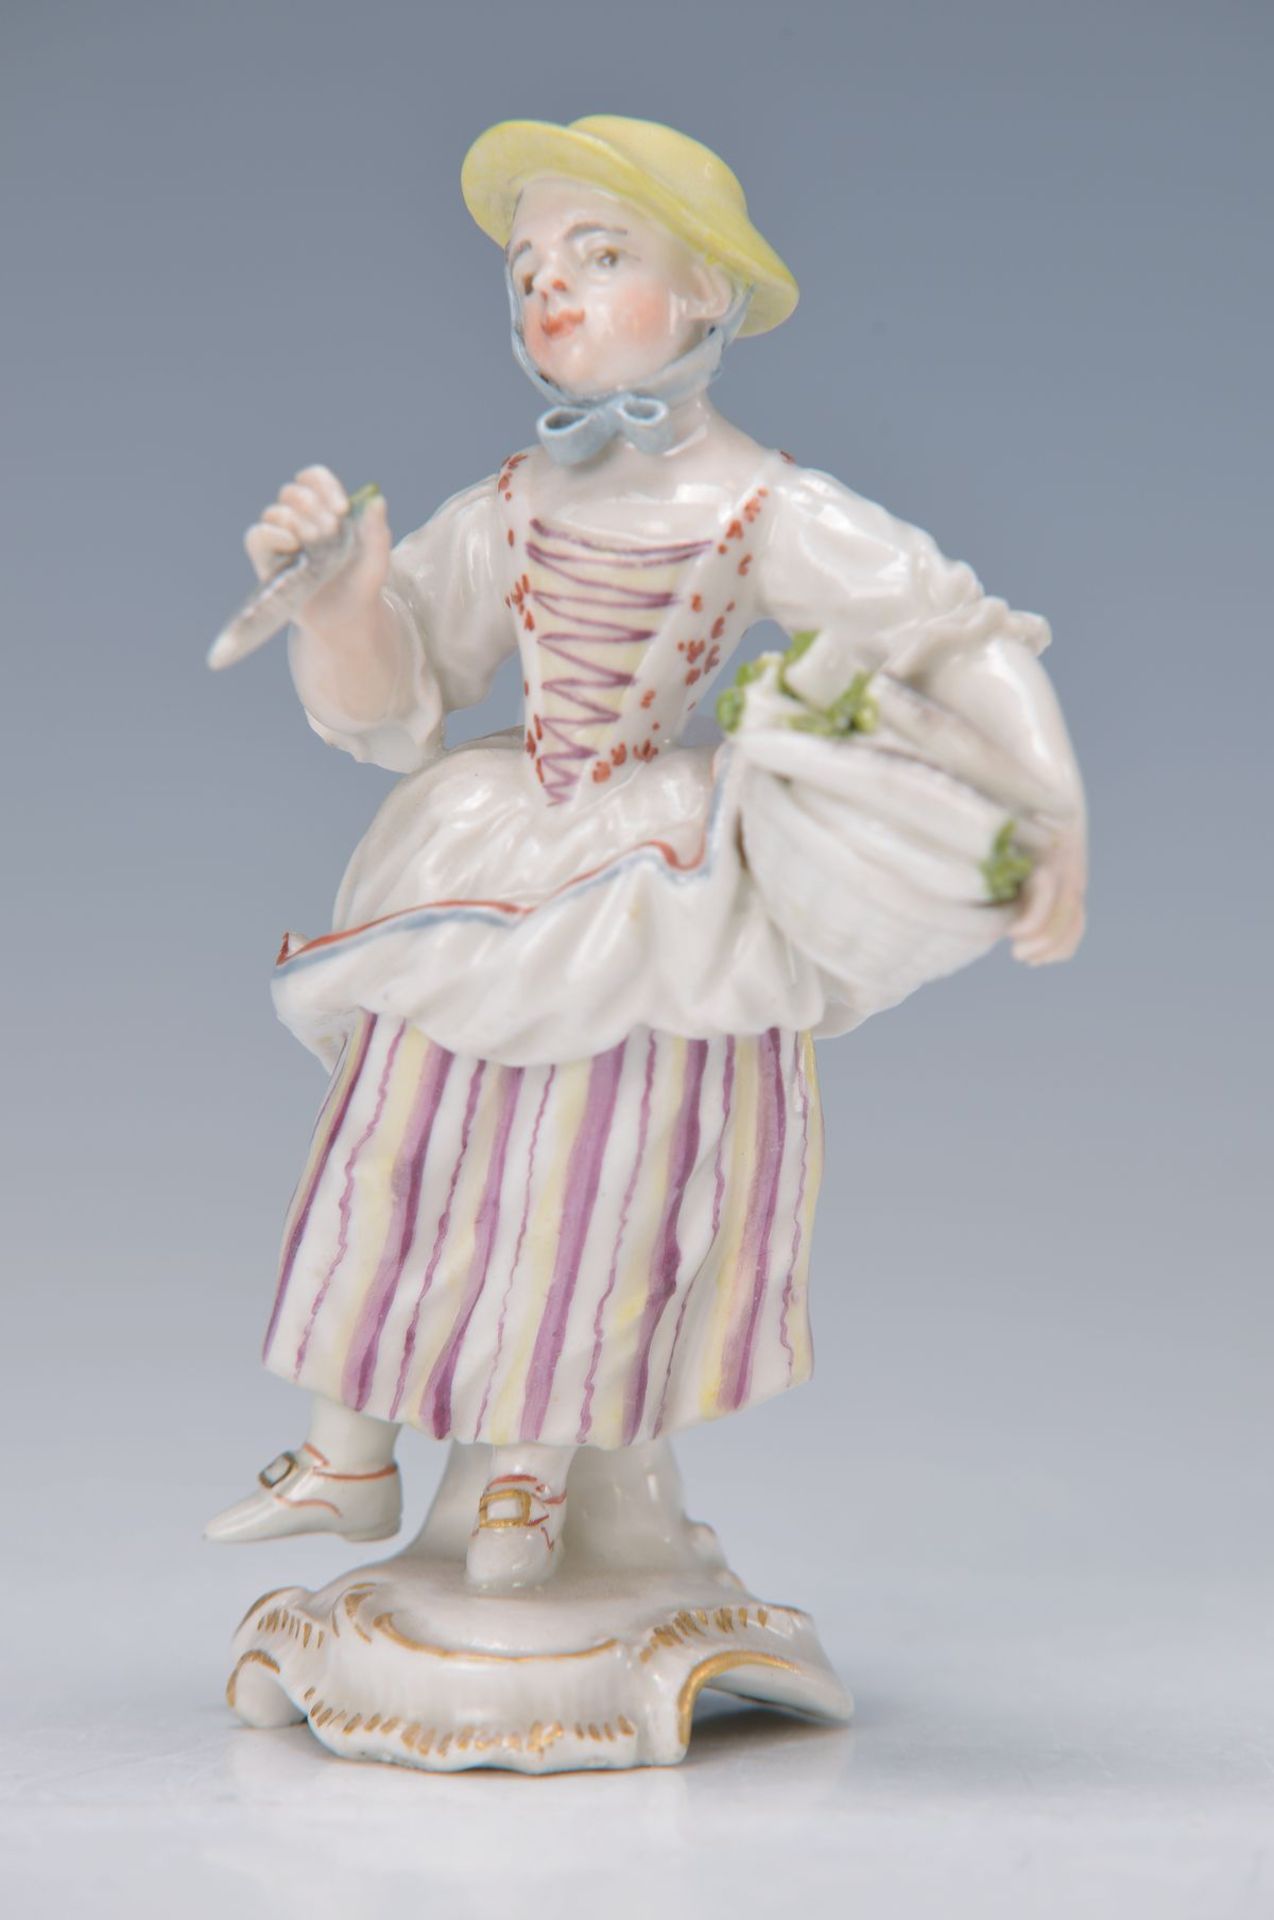 Porzellanfigur, Frankenthal, Entwurf Link, um 1765-70, Die Rettichverkäuferin, elegante